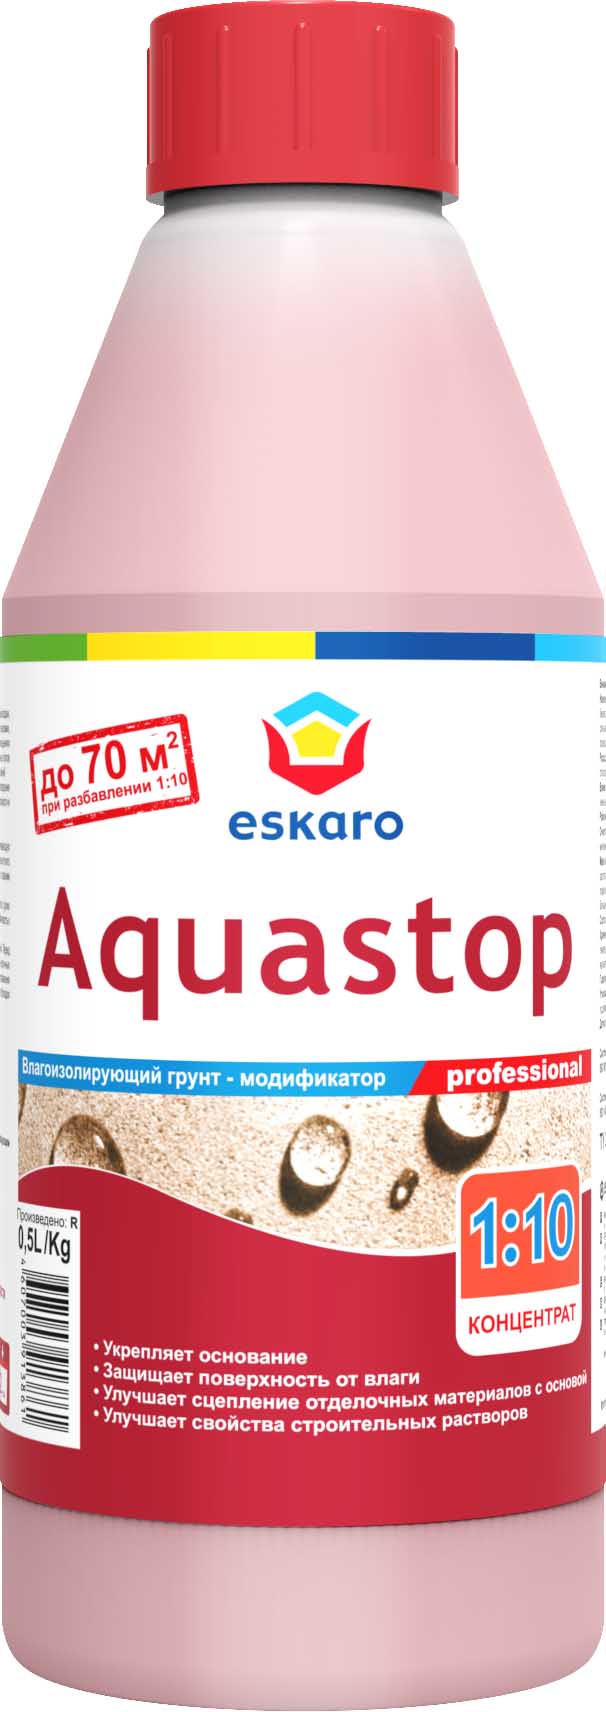 Грунт влагоизолятор (грунтовка) Eskaro Aquastop Professional 0,5 л концентрат 1:10								